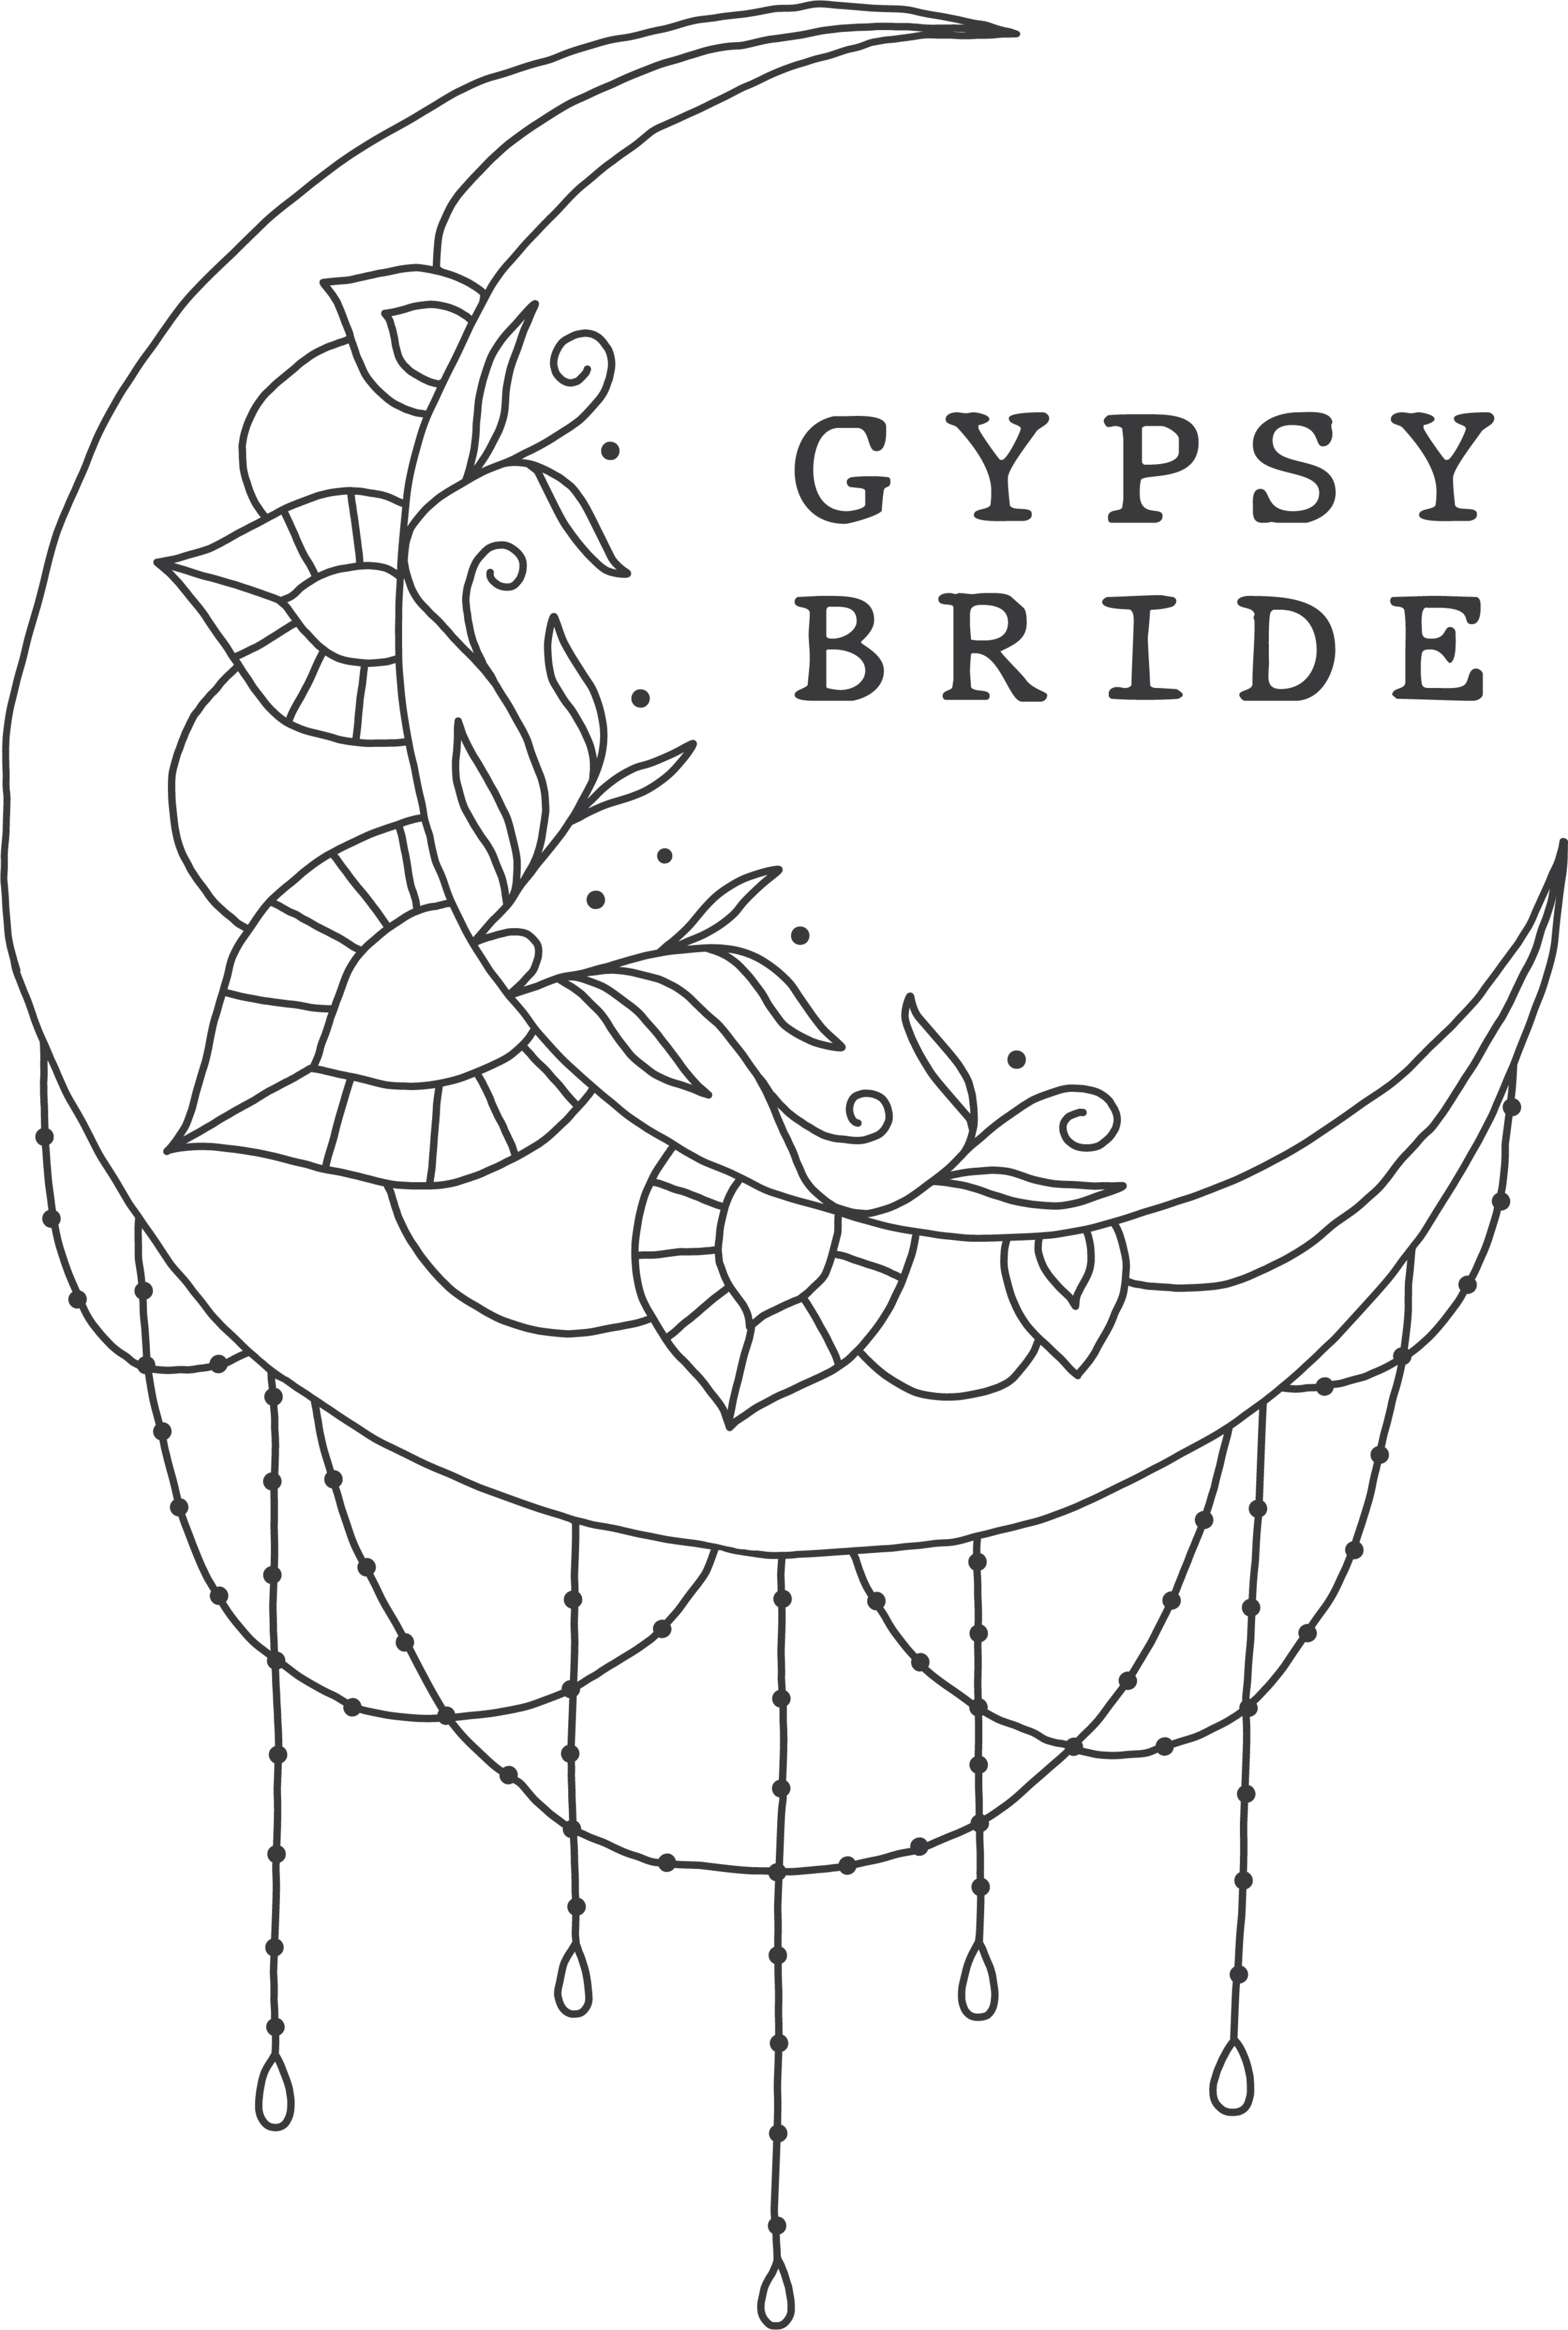 GYPSY BRIDE